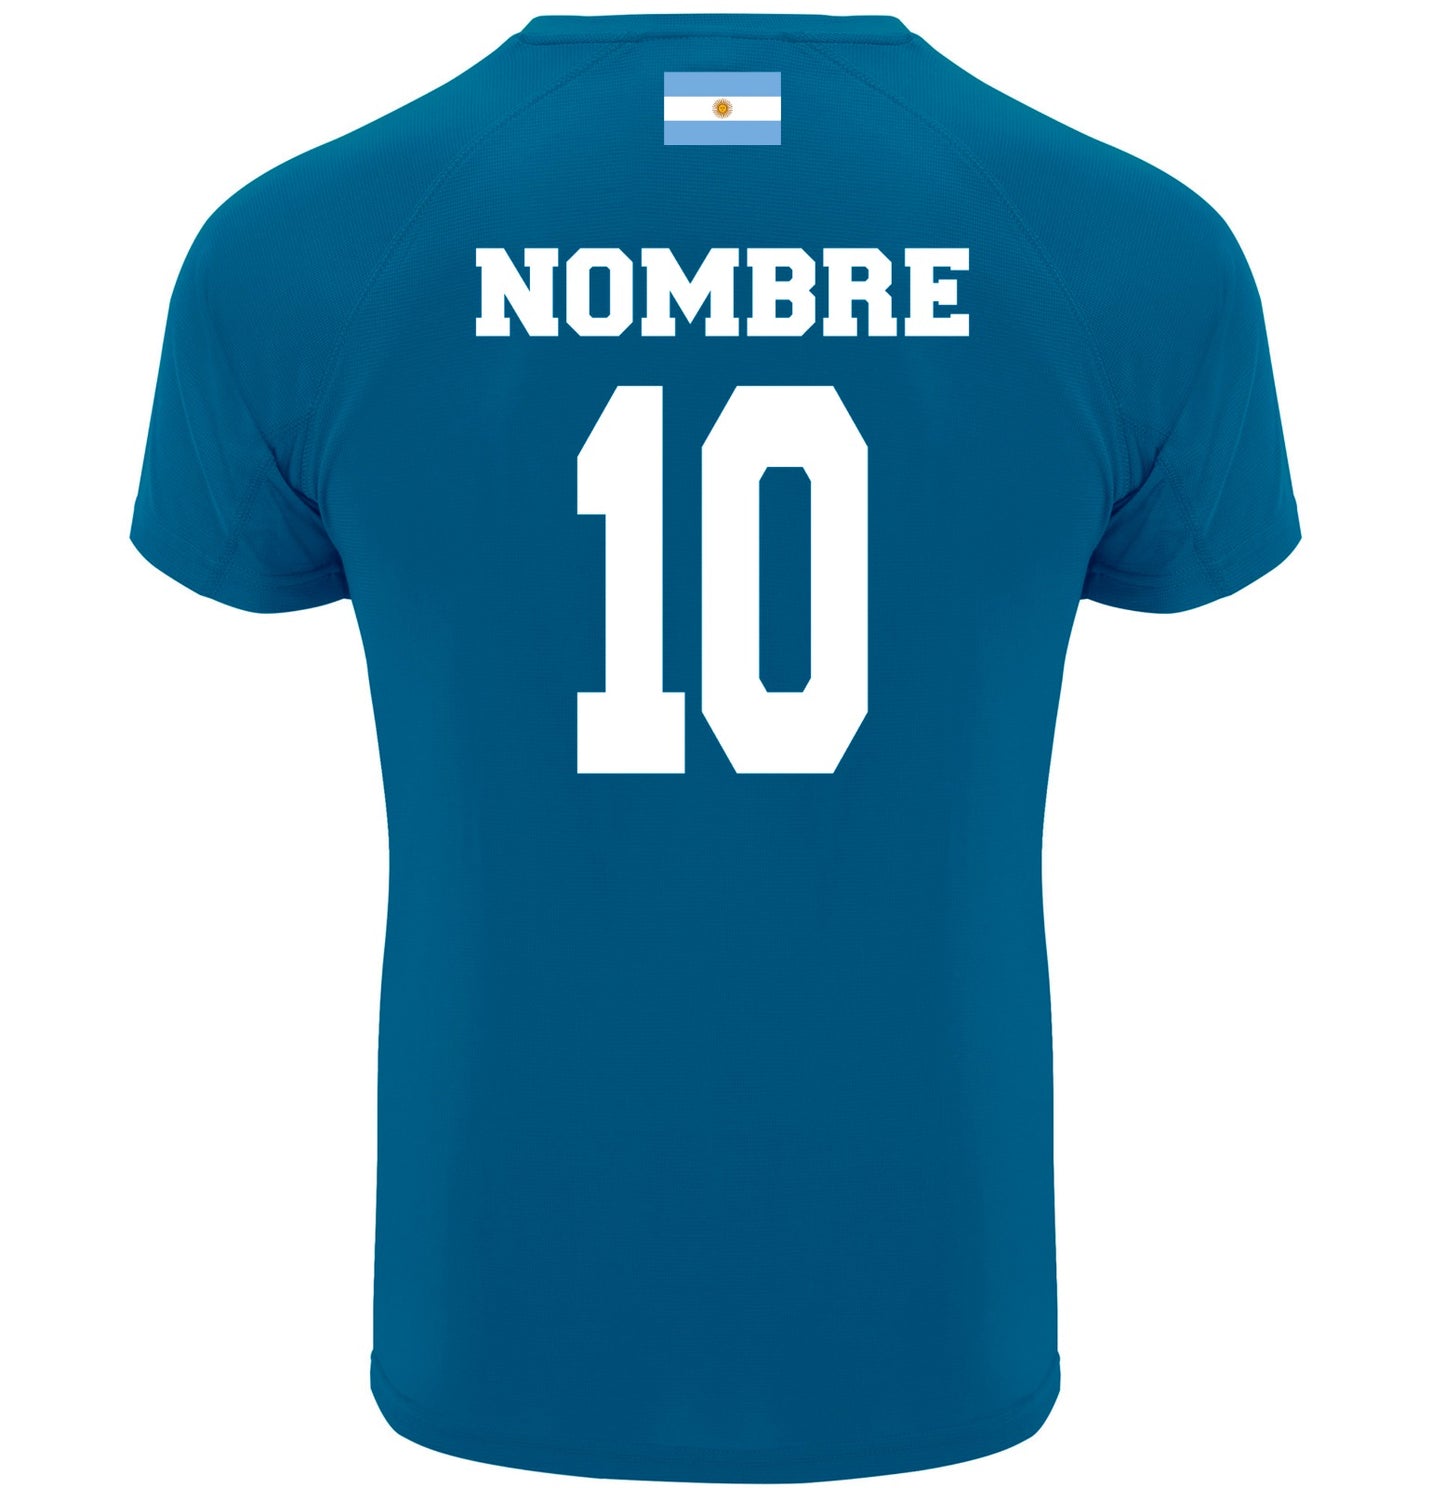 Camiseta argentina personalizada